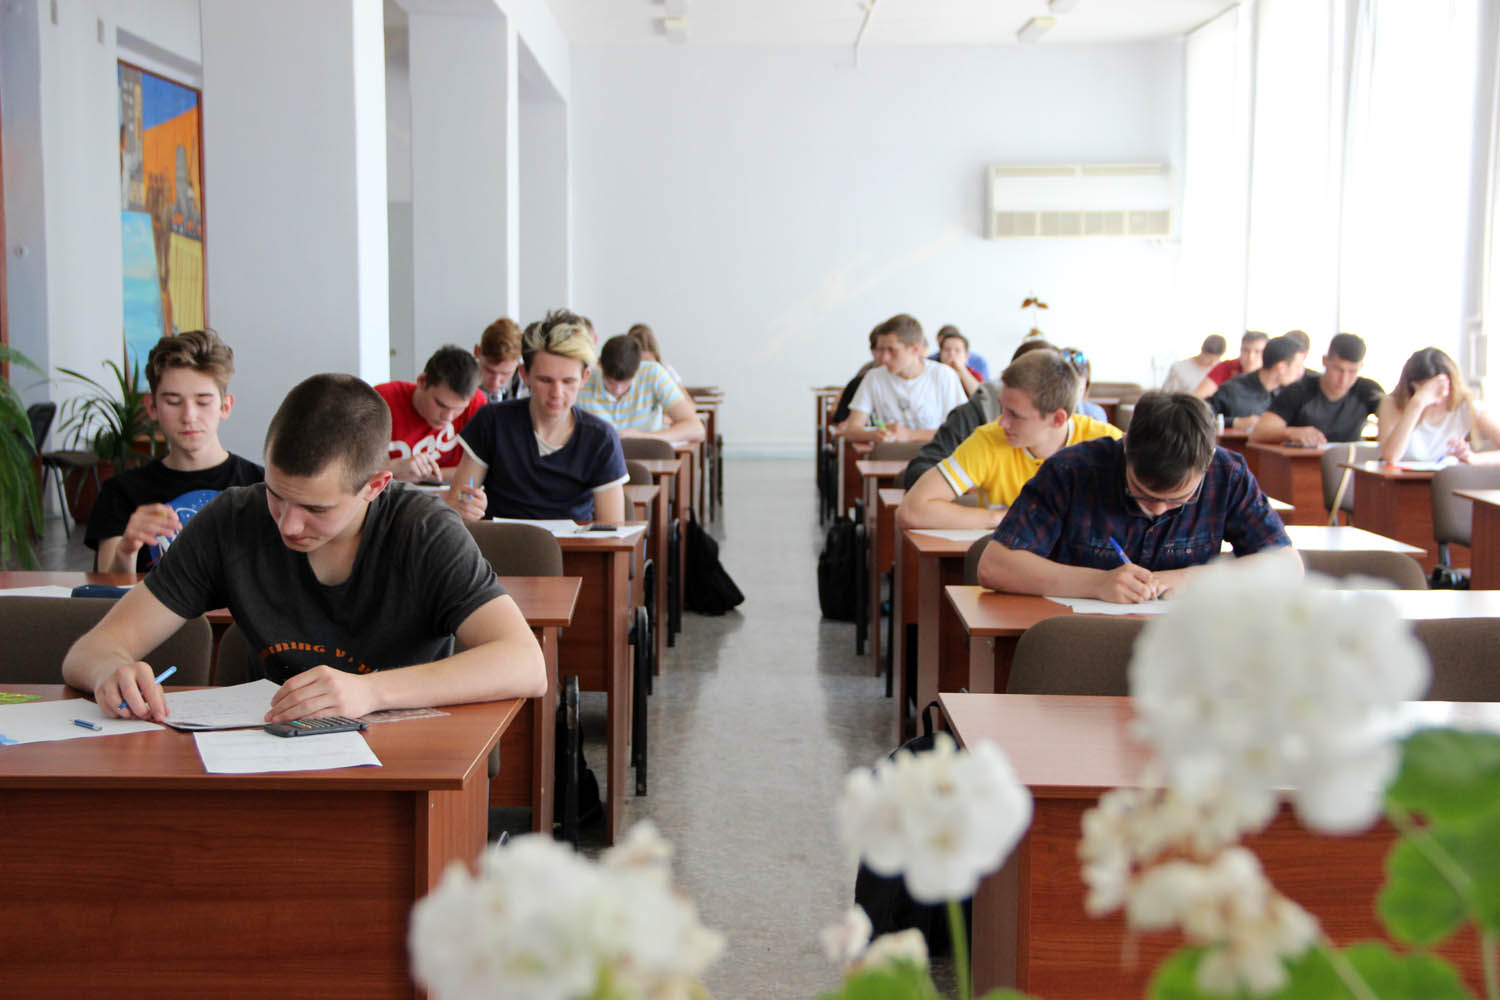 На олимпиаде по Электротехнике и электронике определены лучшие студенты, которые представят Волгоградский энергетический колледж на региональной олимпиаде по этой учебной дисциплине